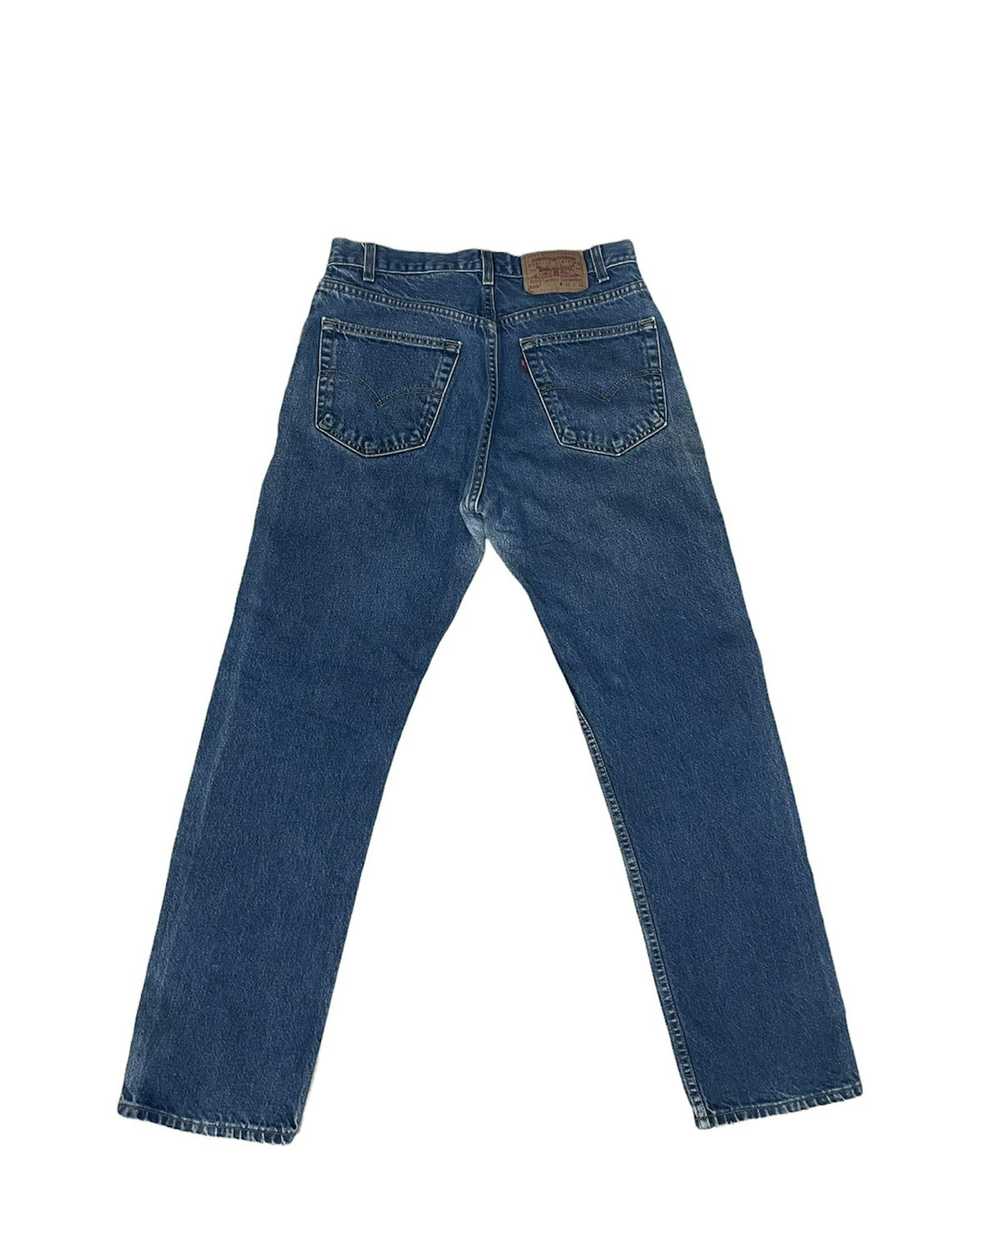 Levi's Vintage Y2k Levis 505 Denim Jeans - image 3